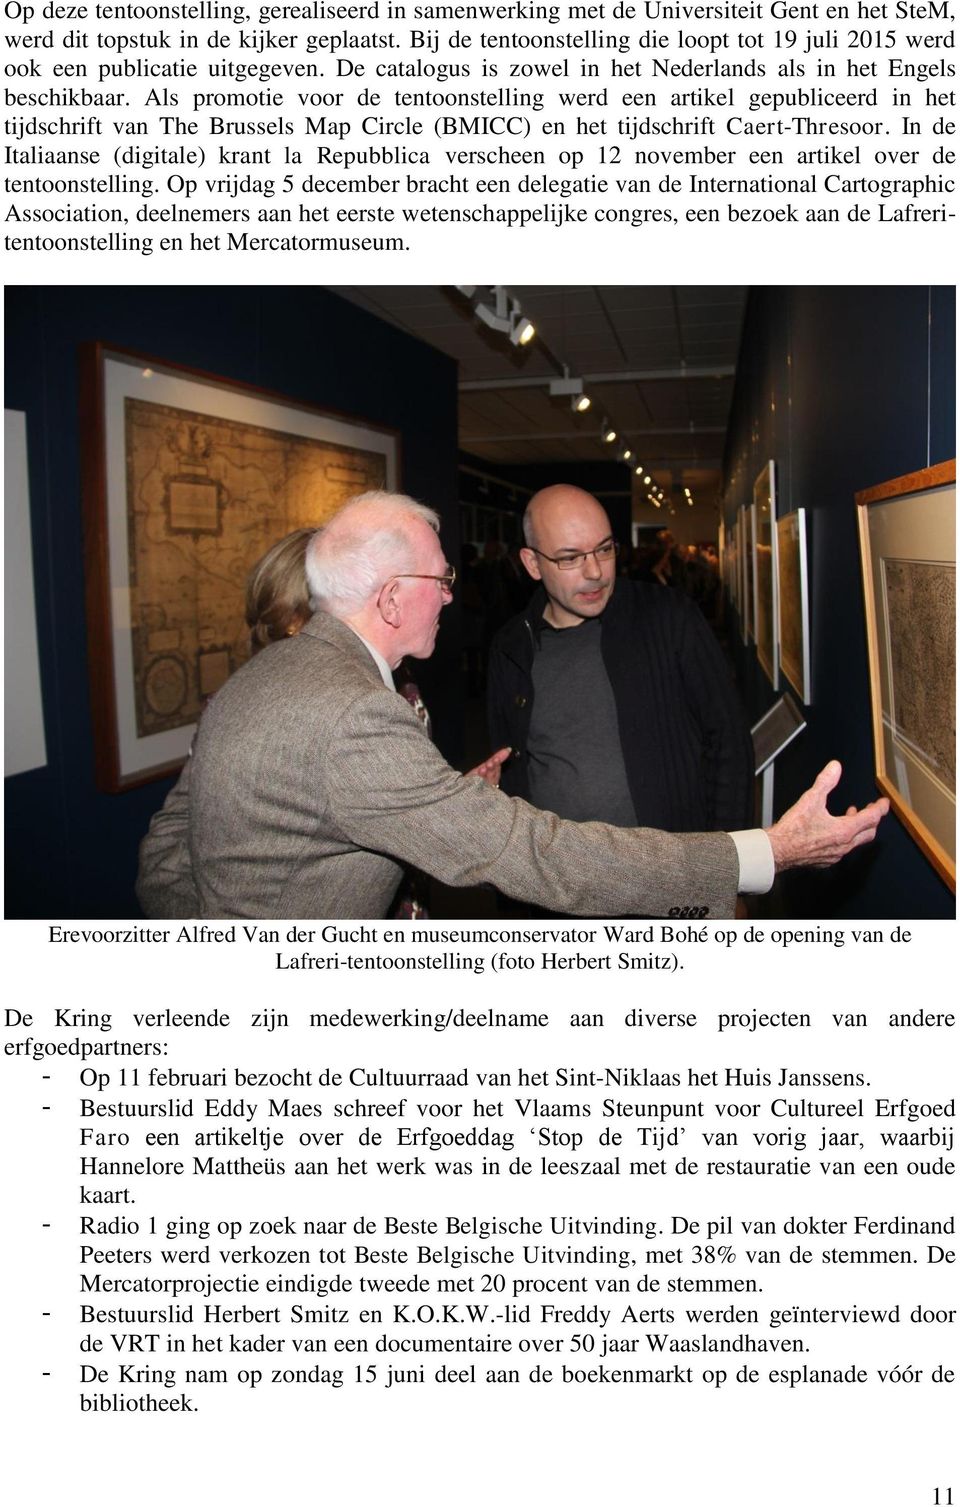 Als promotie voor de tentoonstelling werd een artikel gepubliceerd in het tijdschrift van The Brussels Map Circle (BMICC) en het tijdschrift Caert-Thresoor.